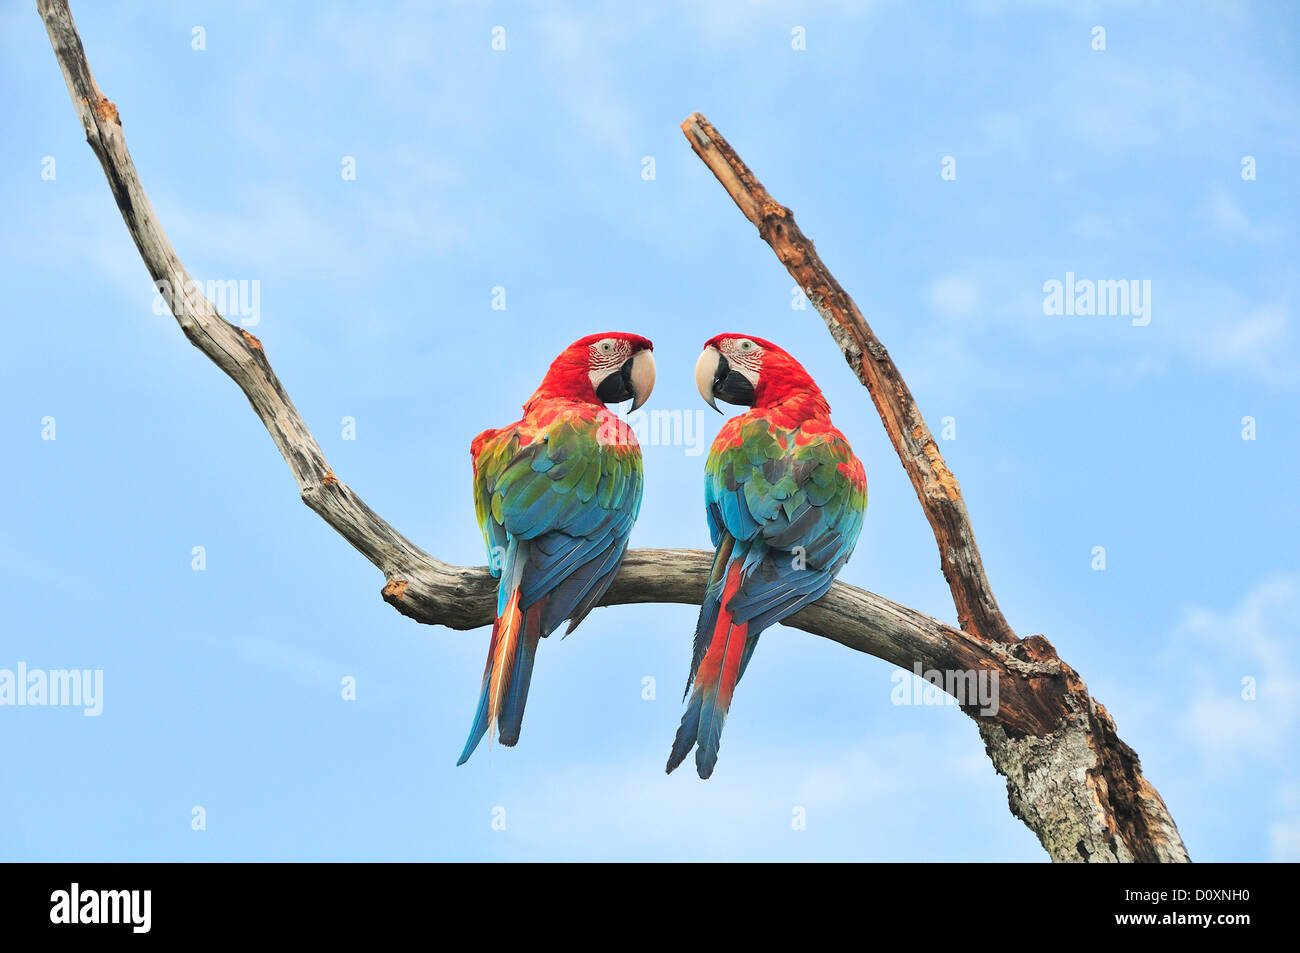 Parrots, Caribbean sea, Bocas del Toro, bird, Isla Colon, Panama, Central America, Stock Photo